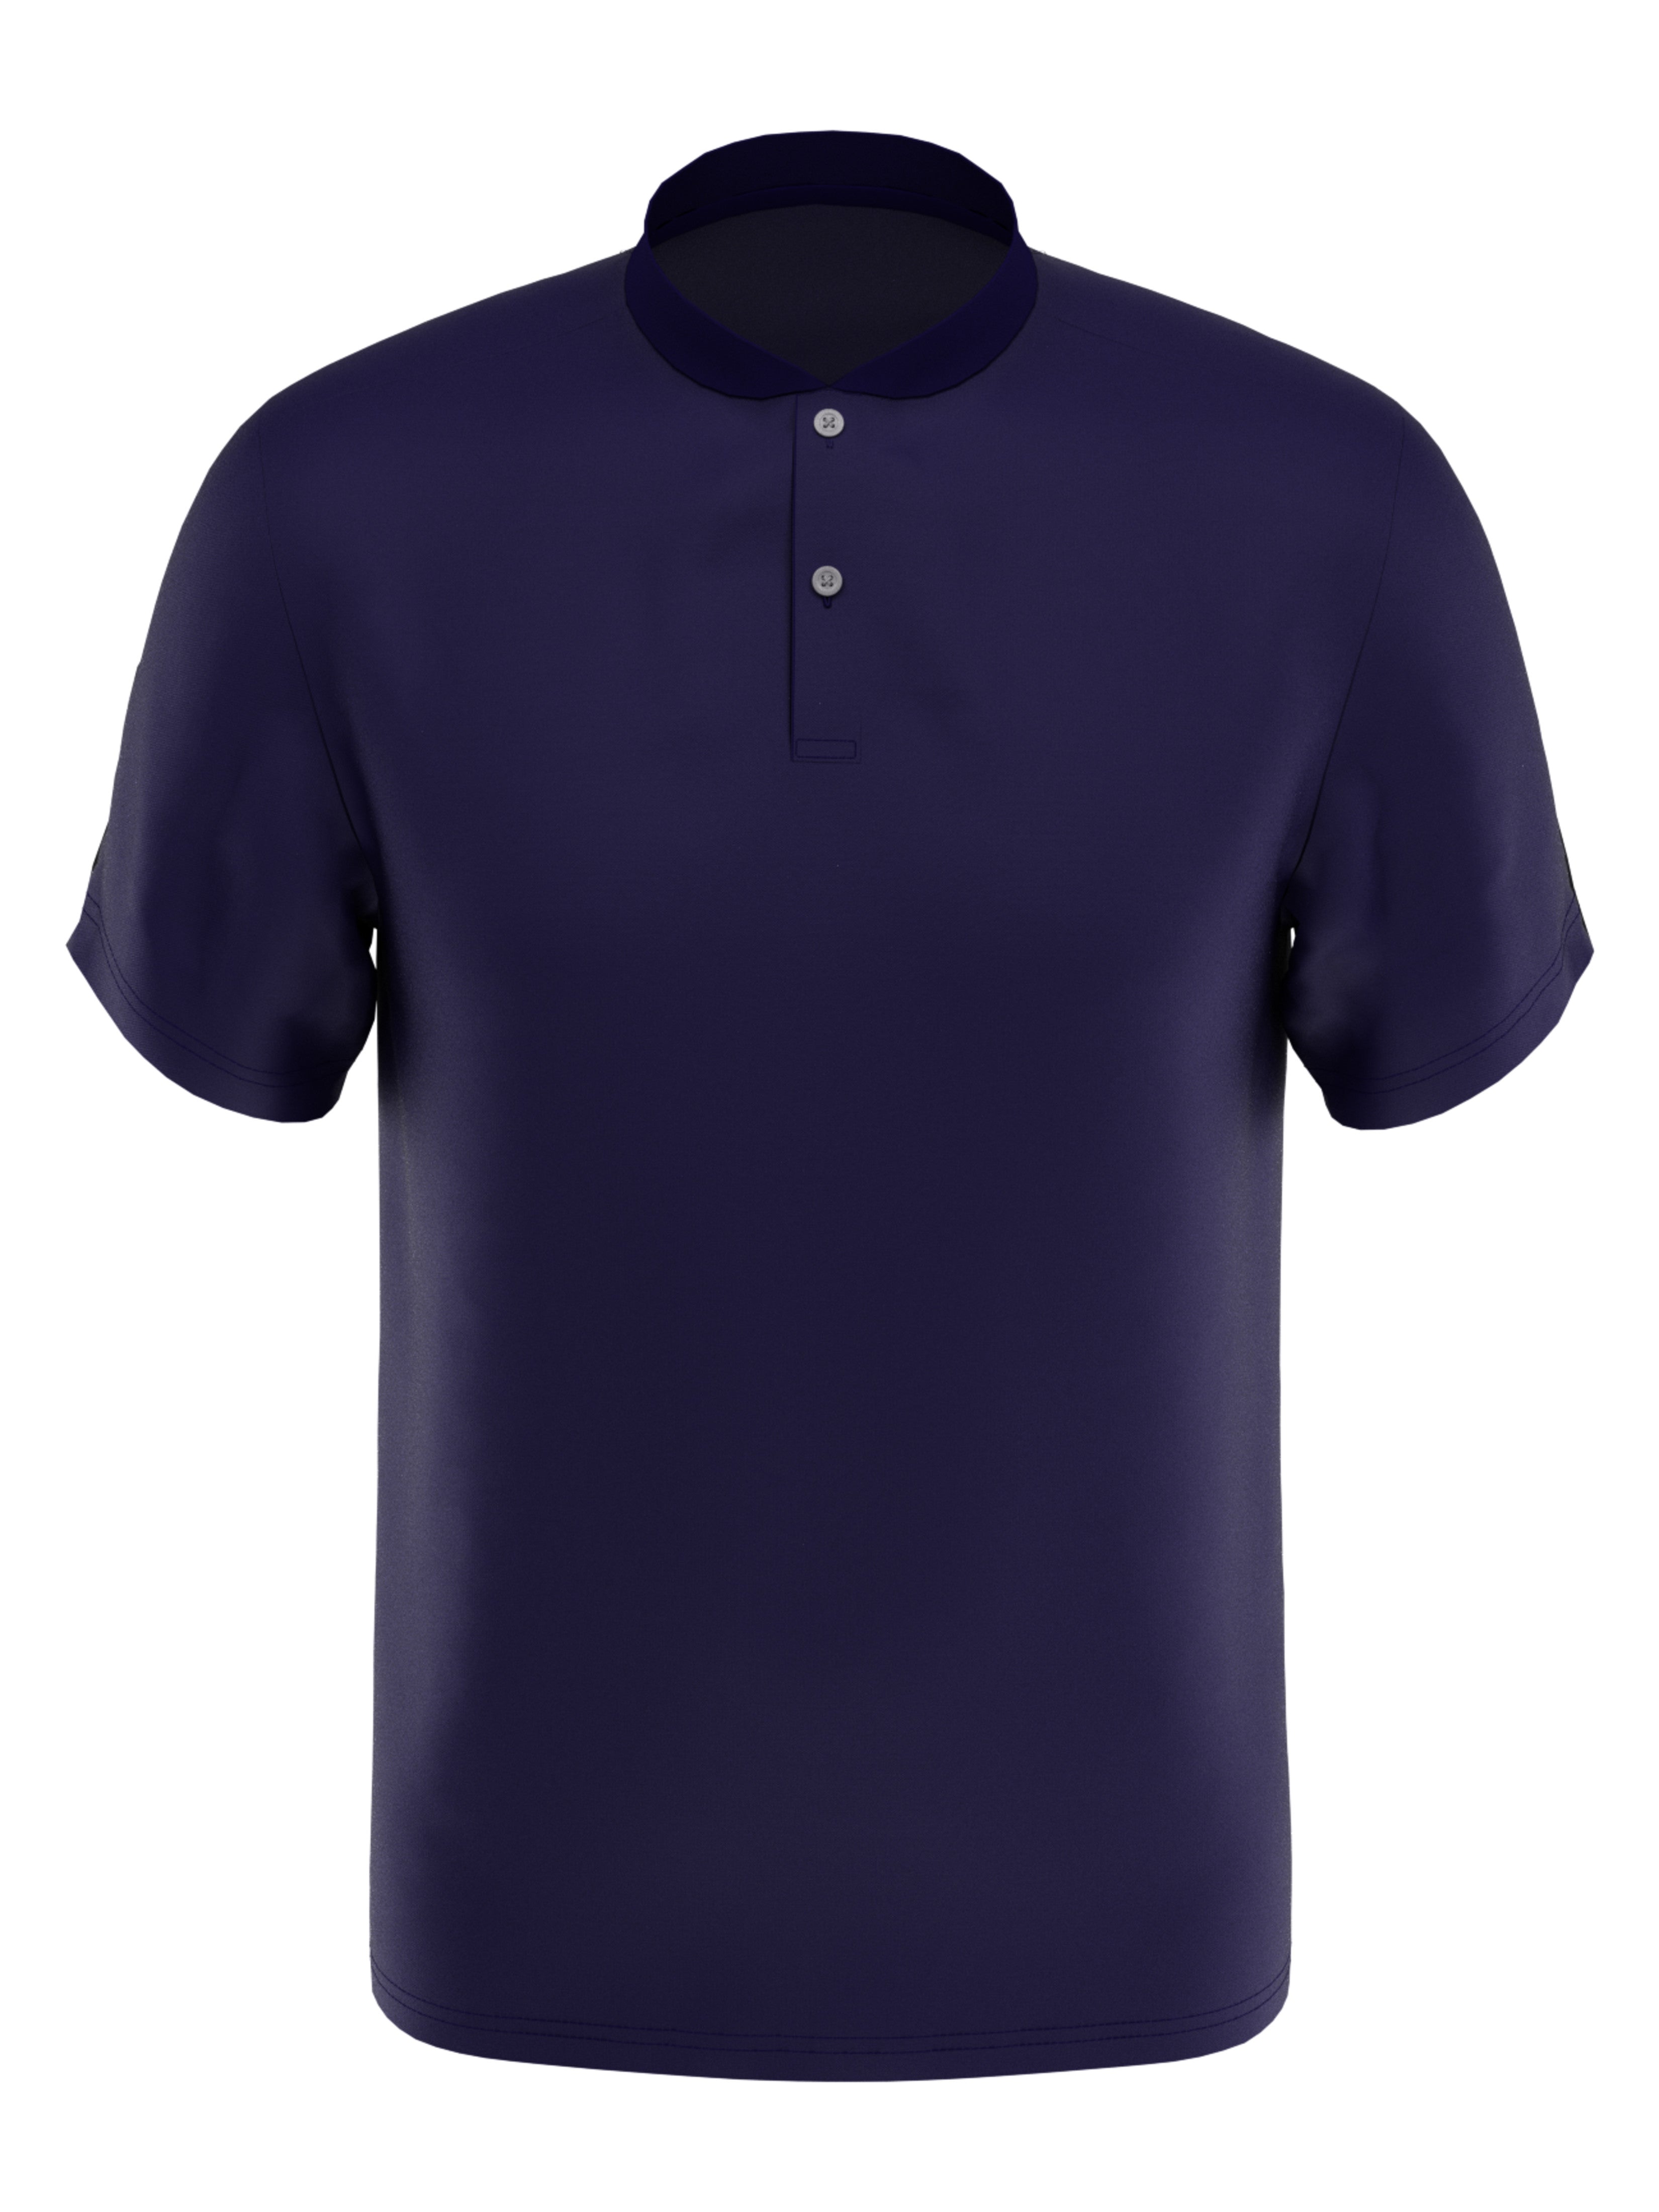 PGA TOUR Apparel Boys Edge Collar Pique Golf Polo Shirt, Size Large, Navy Blue, 100% Polyester | Golf Apparel Shop